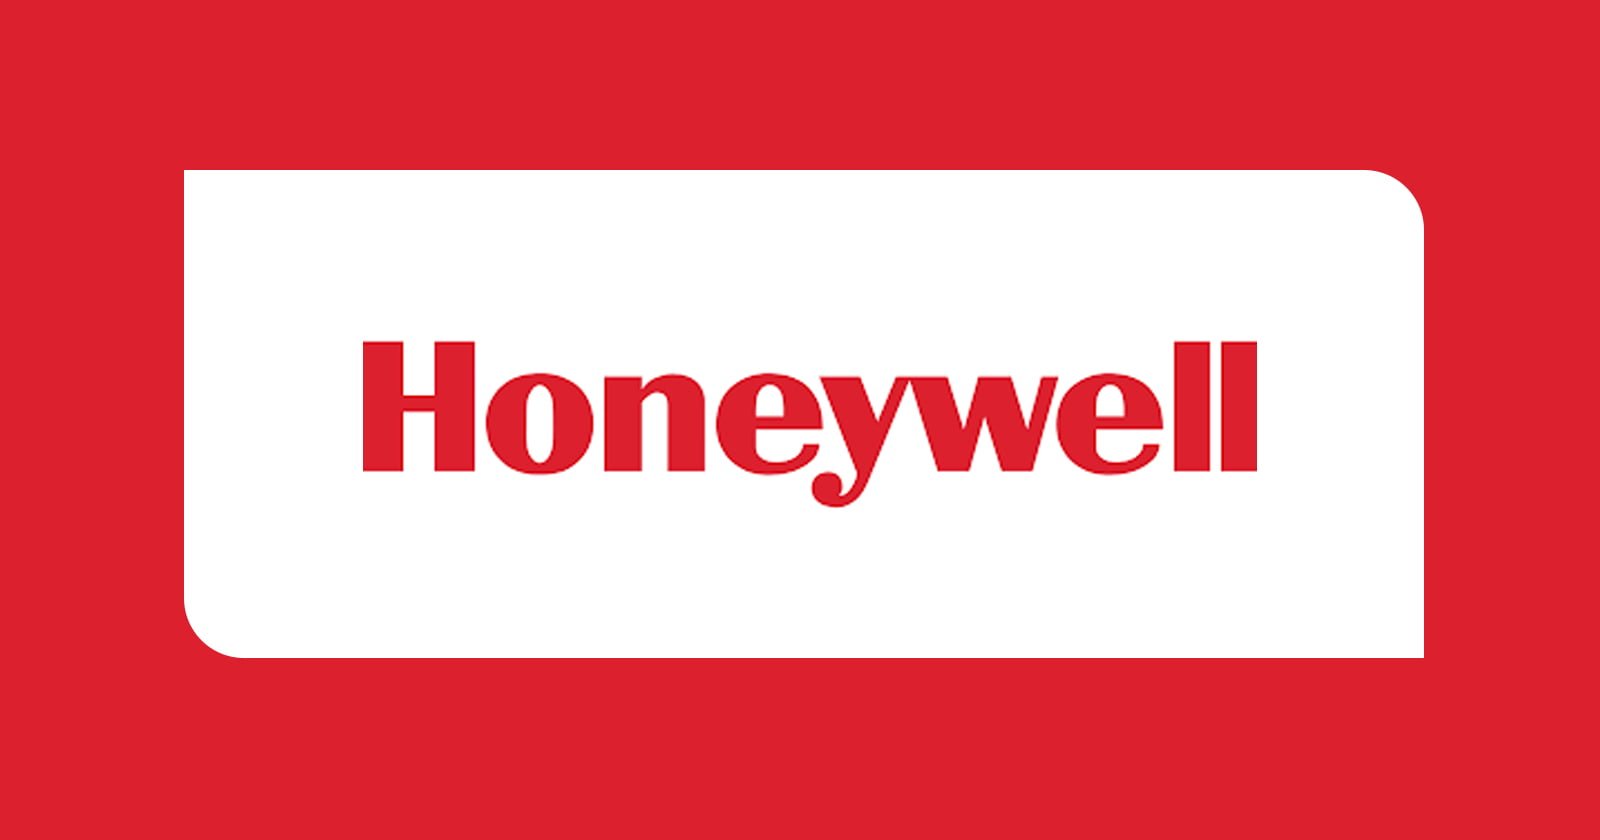 CA - Honeywell - CA Vacancy - Vacancy - CA Vacancy in Honeywell - CA jobs - jobscan